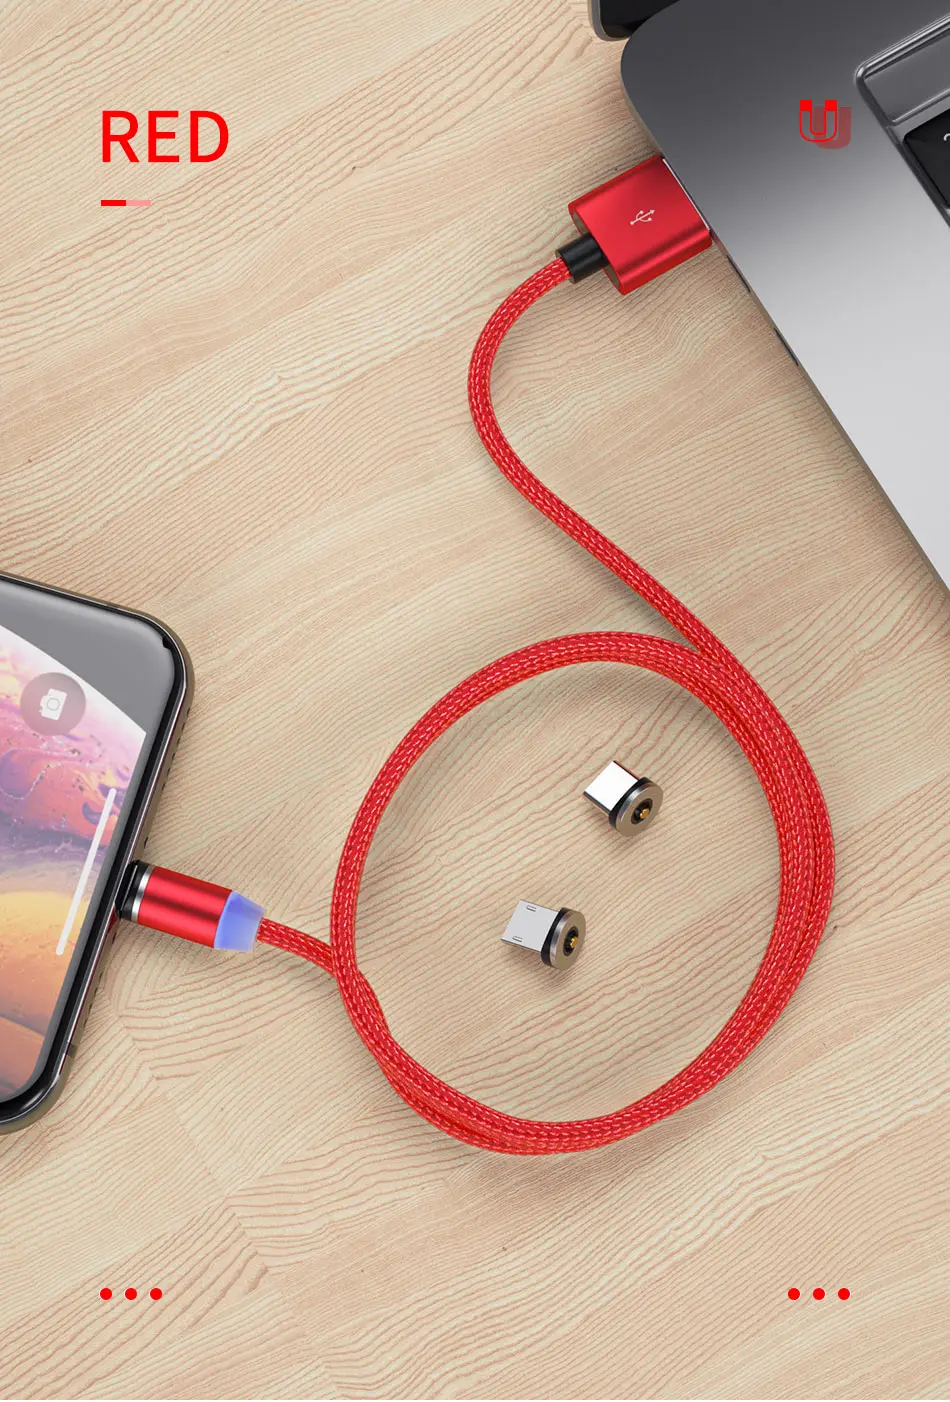 YKZ Магнитный USB кабель Micro USB кабель для iPhone samsung Android Быстрая зарядка Магнит usb type C кабель Шнур для мобильного телефона